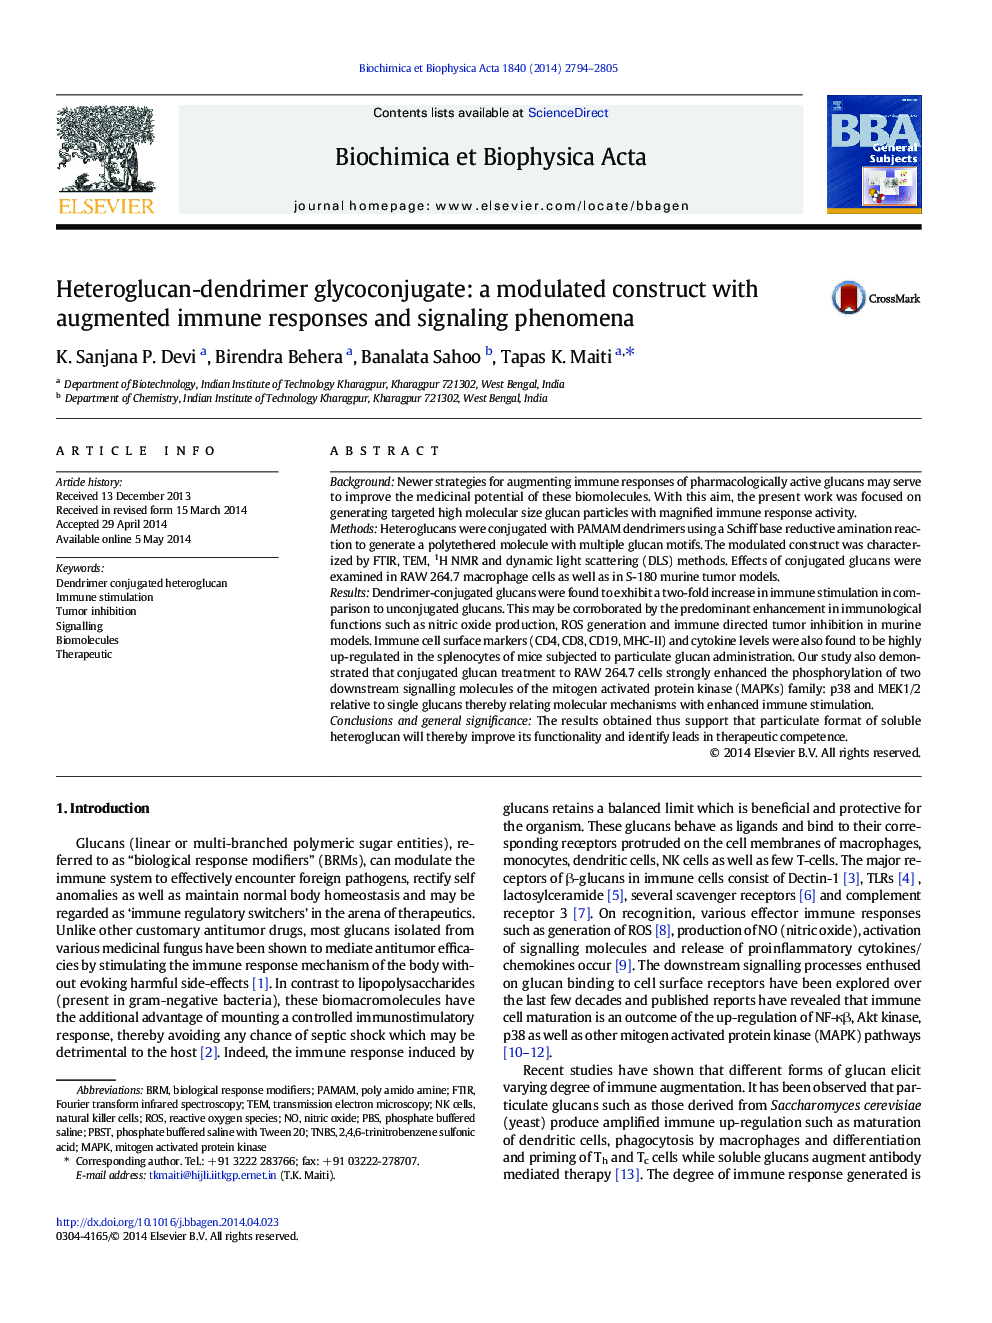 هیدروگلوکان-دندریمر گلیکوکونژوگه: یک ساختار مدولاسیون با پاسخ های تقویت شده ایمنی و پدیده های سیگنالینگ 